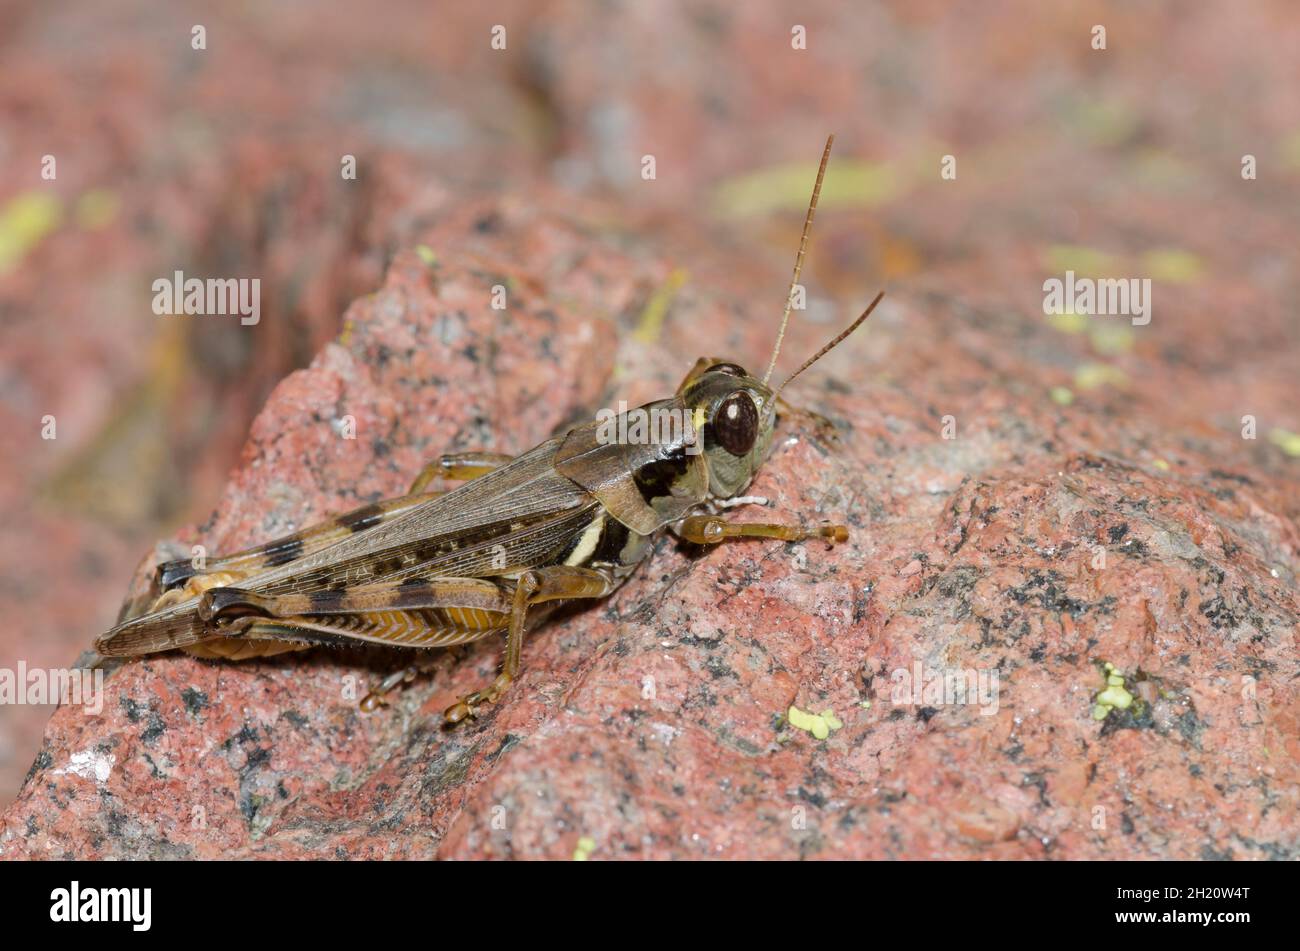 Spur-throated Grasshopper, Melanoplus sp. Stock Photo